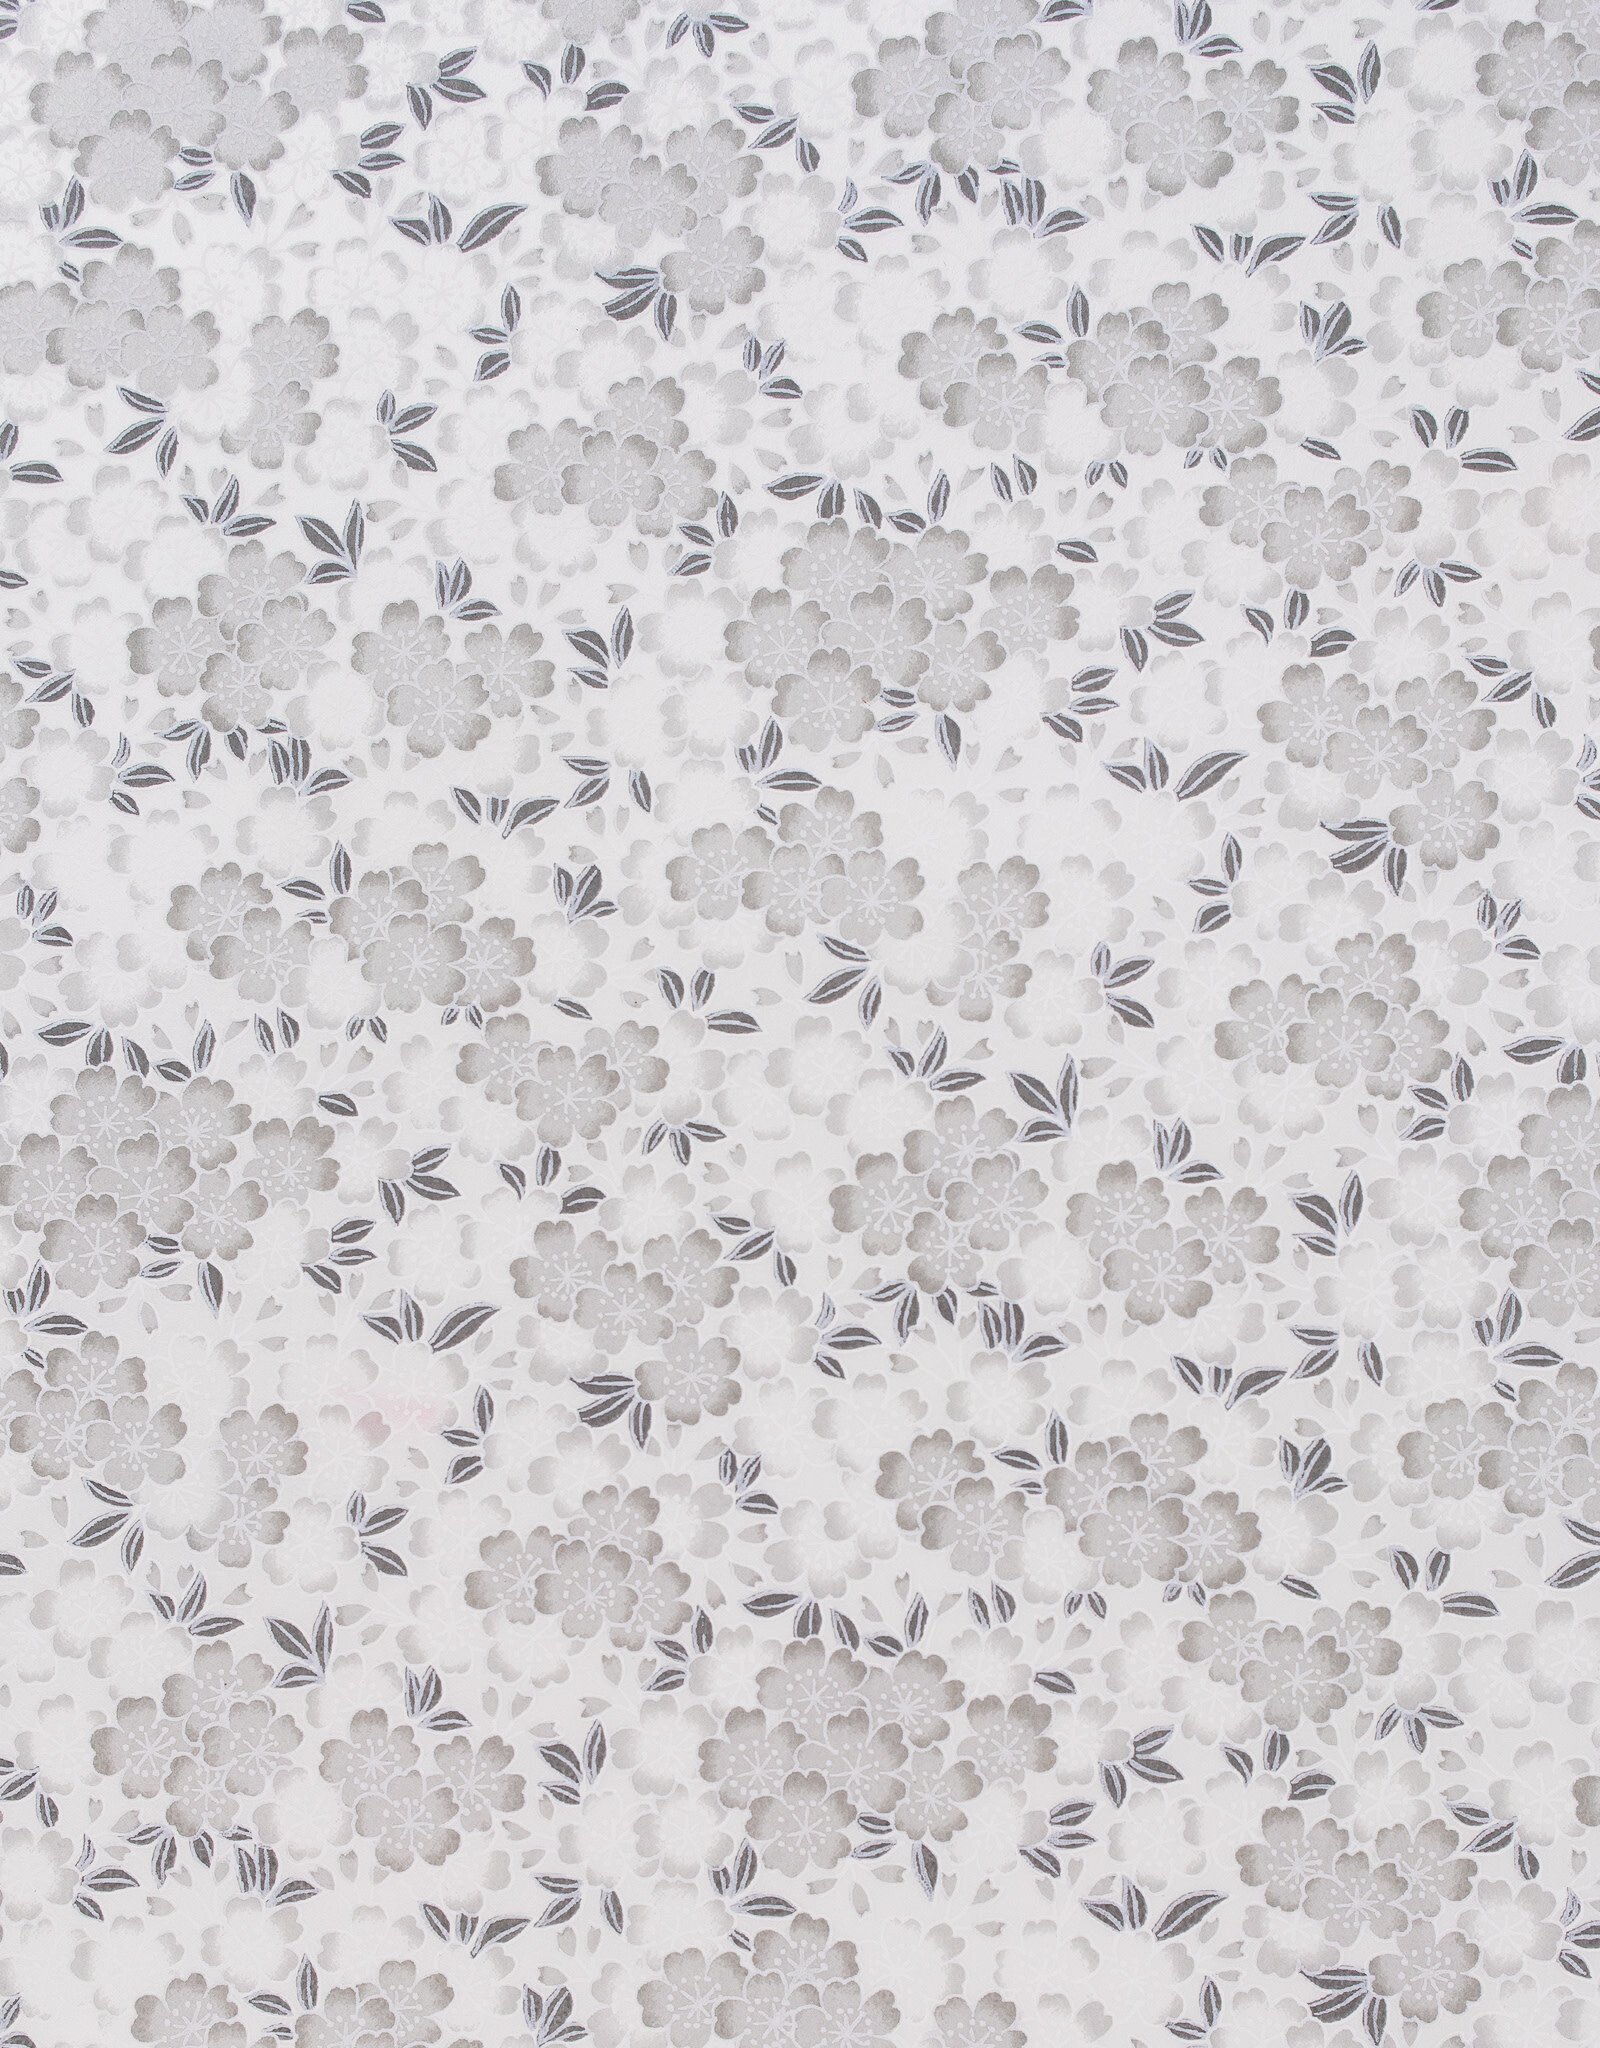 AITOH Aitoh Yuzenshi: Grey Flowers on White, 18.5" x 25"